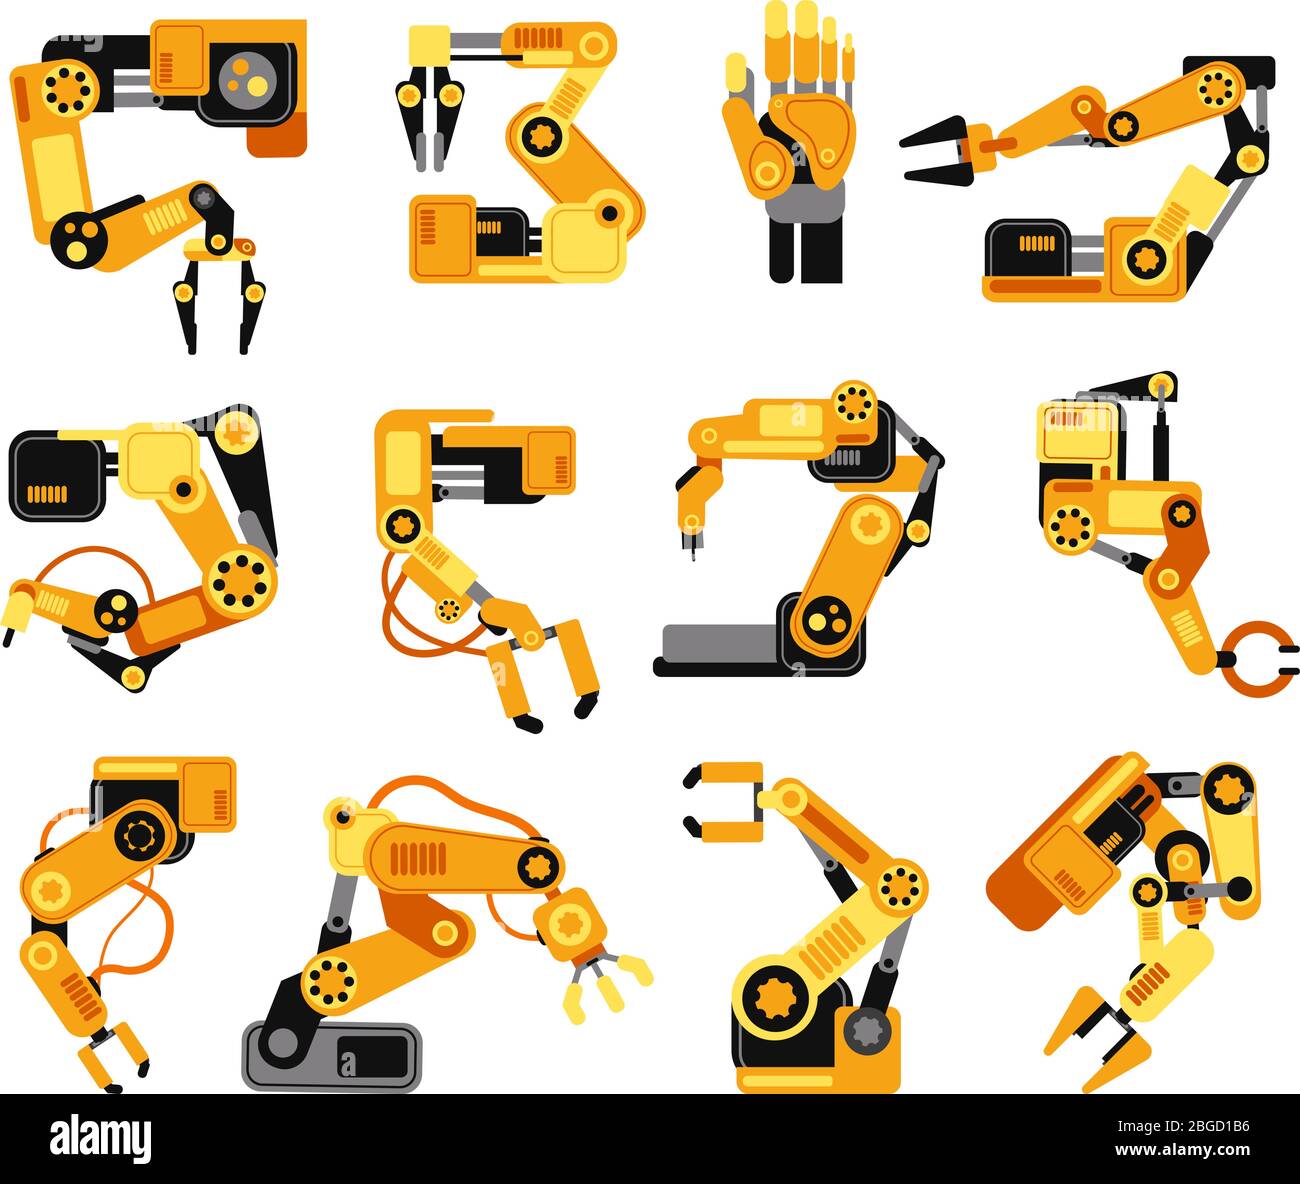 Les bras robotiques industriels fabriquent un ensemble vectoriel d'équipements d'assemblage de technologie. Équipement d'assemblage industriel pour l'illustration de la machine de fabrication Illustration de Vecteur